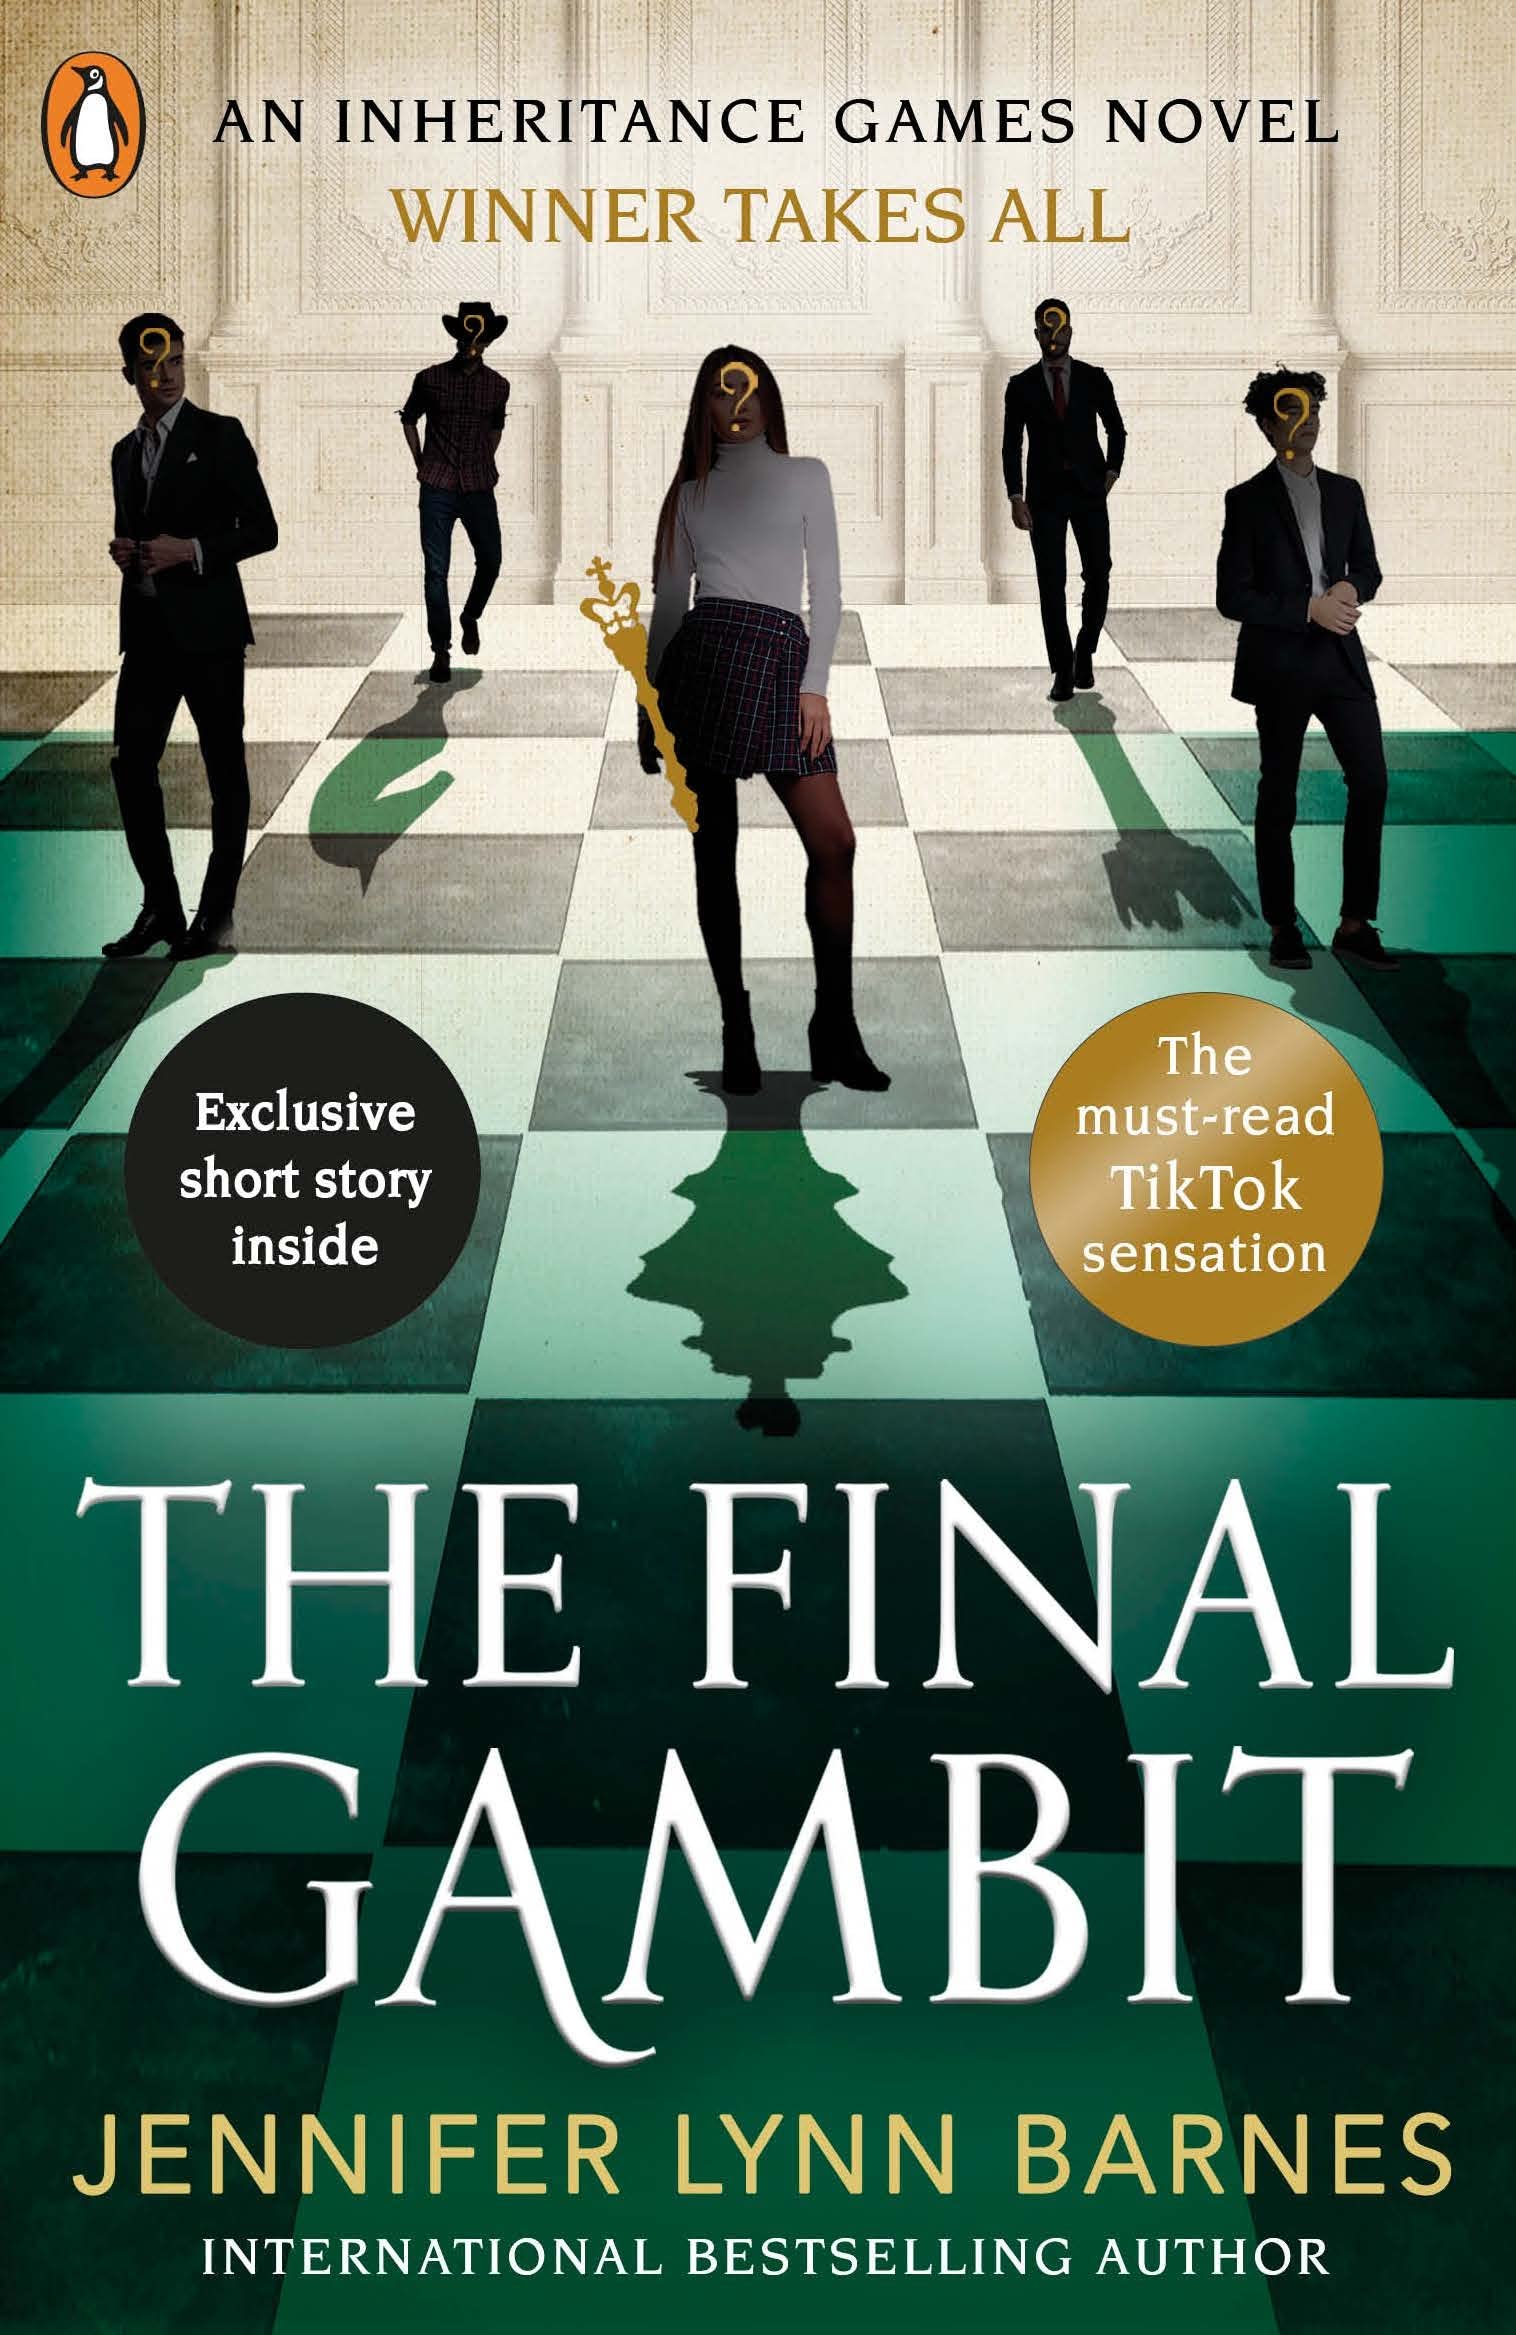 La jugada final / The Final Gambit (UNA HERENCIA EN JUEGO #3) (Paperback)